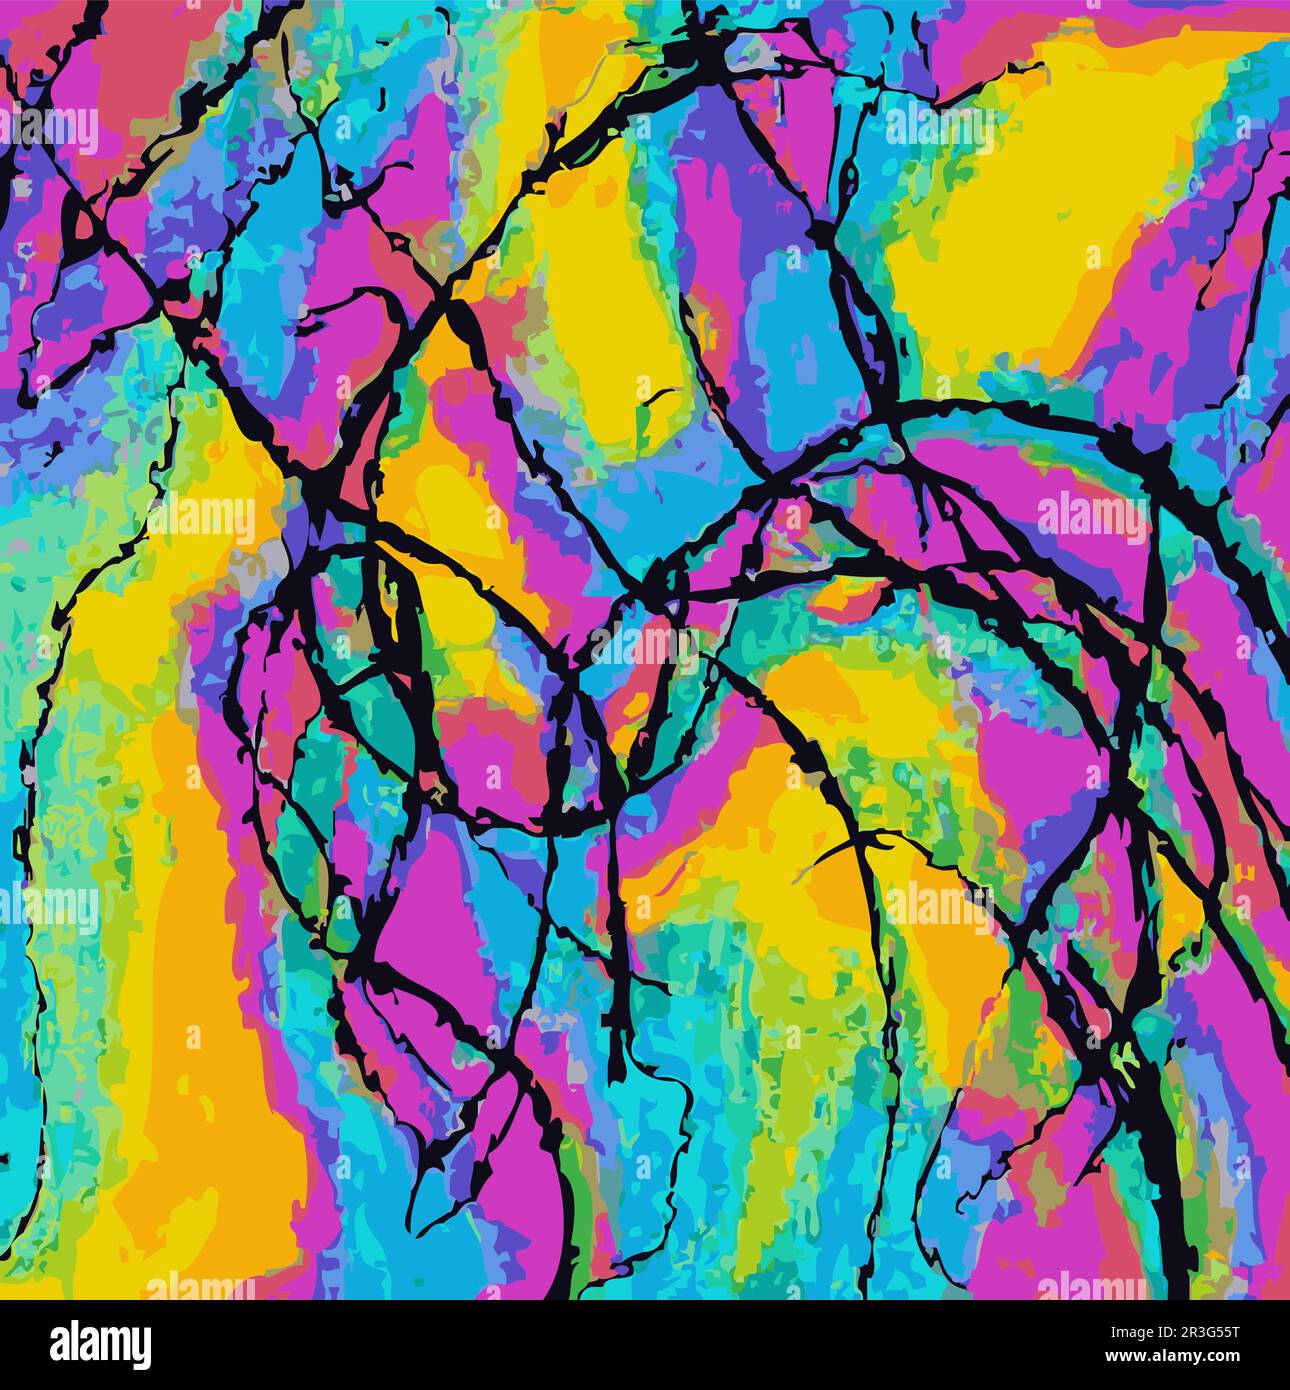 Illustrazione vettoriale Abstract Network Design intricato Splash più colori arcobaleno Pittura moderna Illustrazione Vettoriale